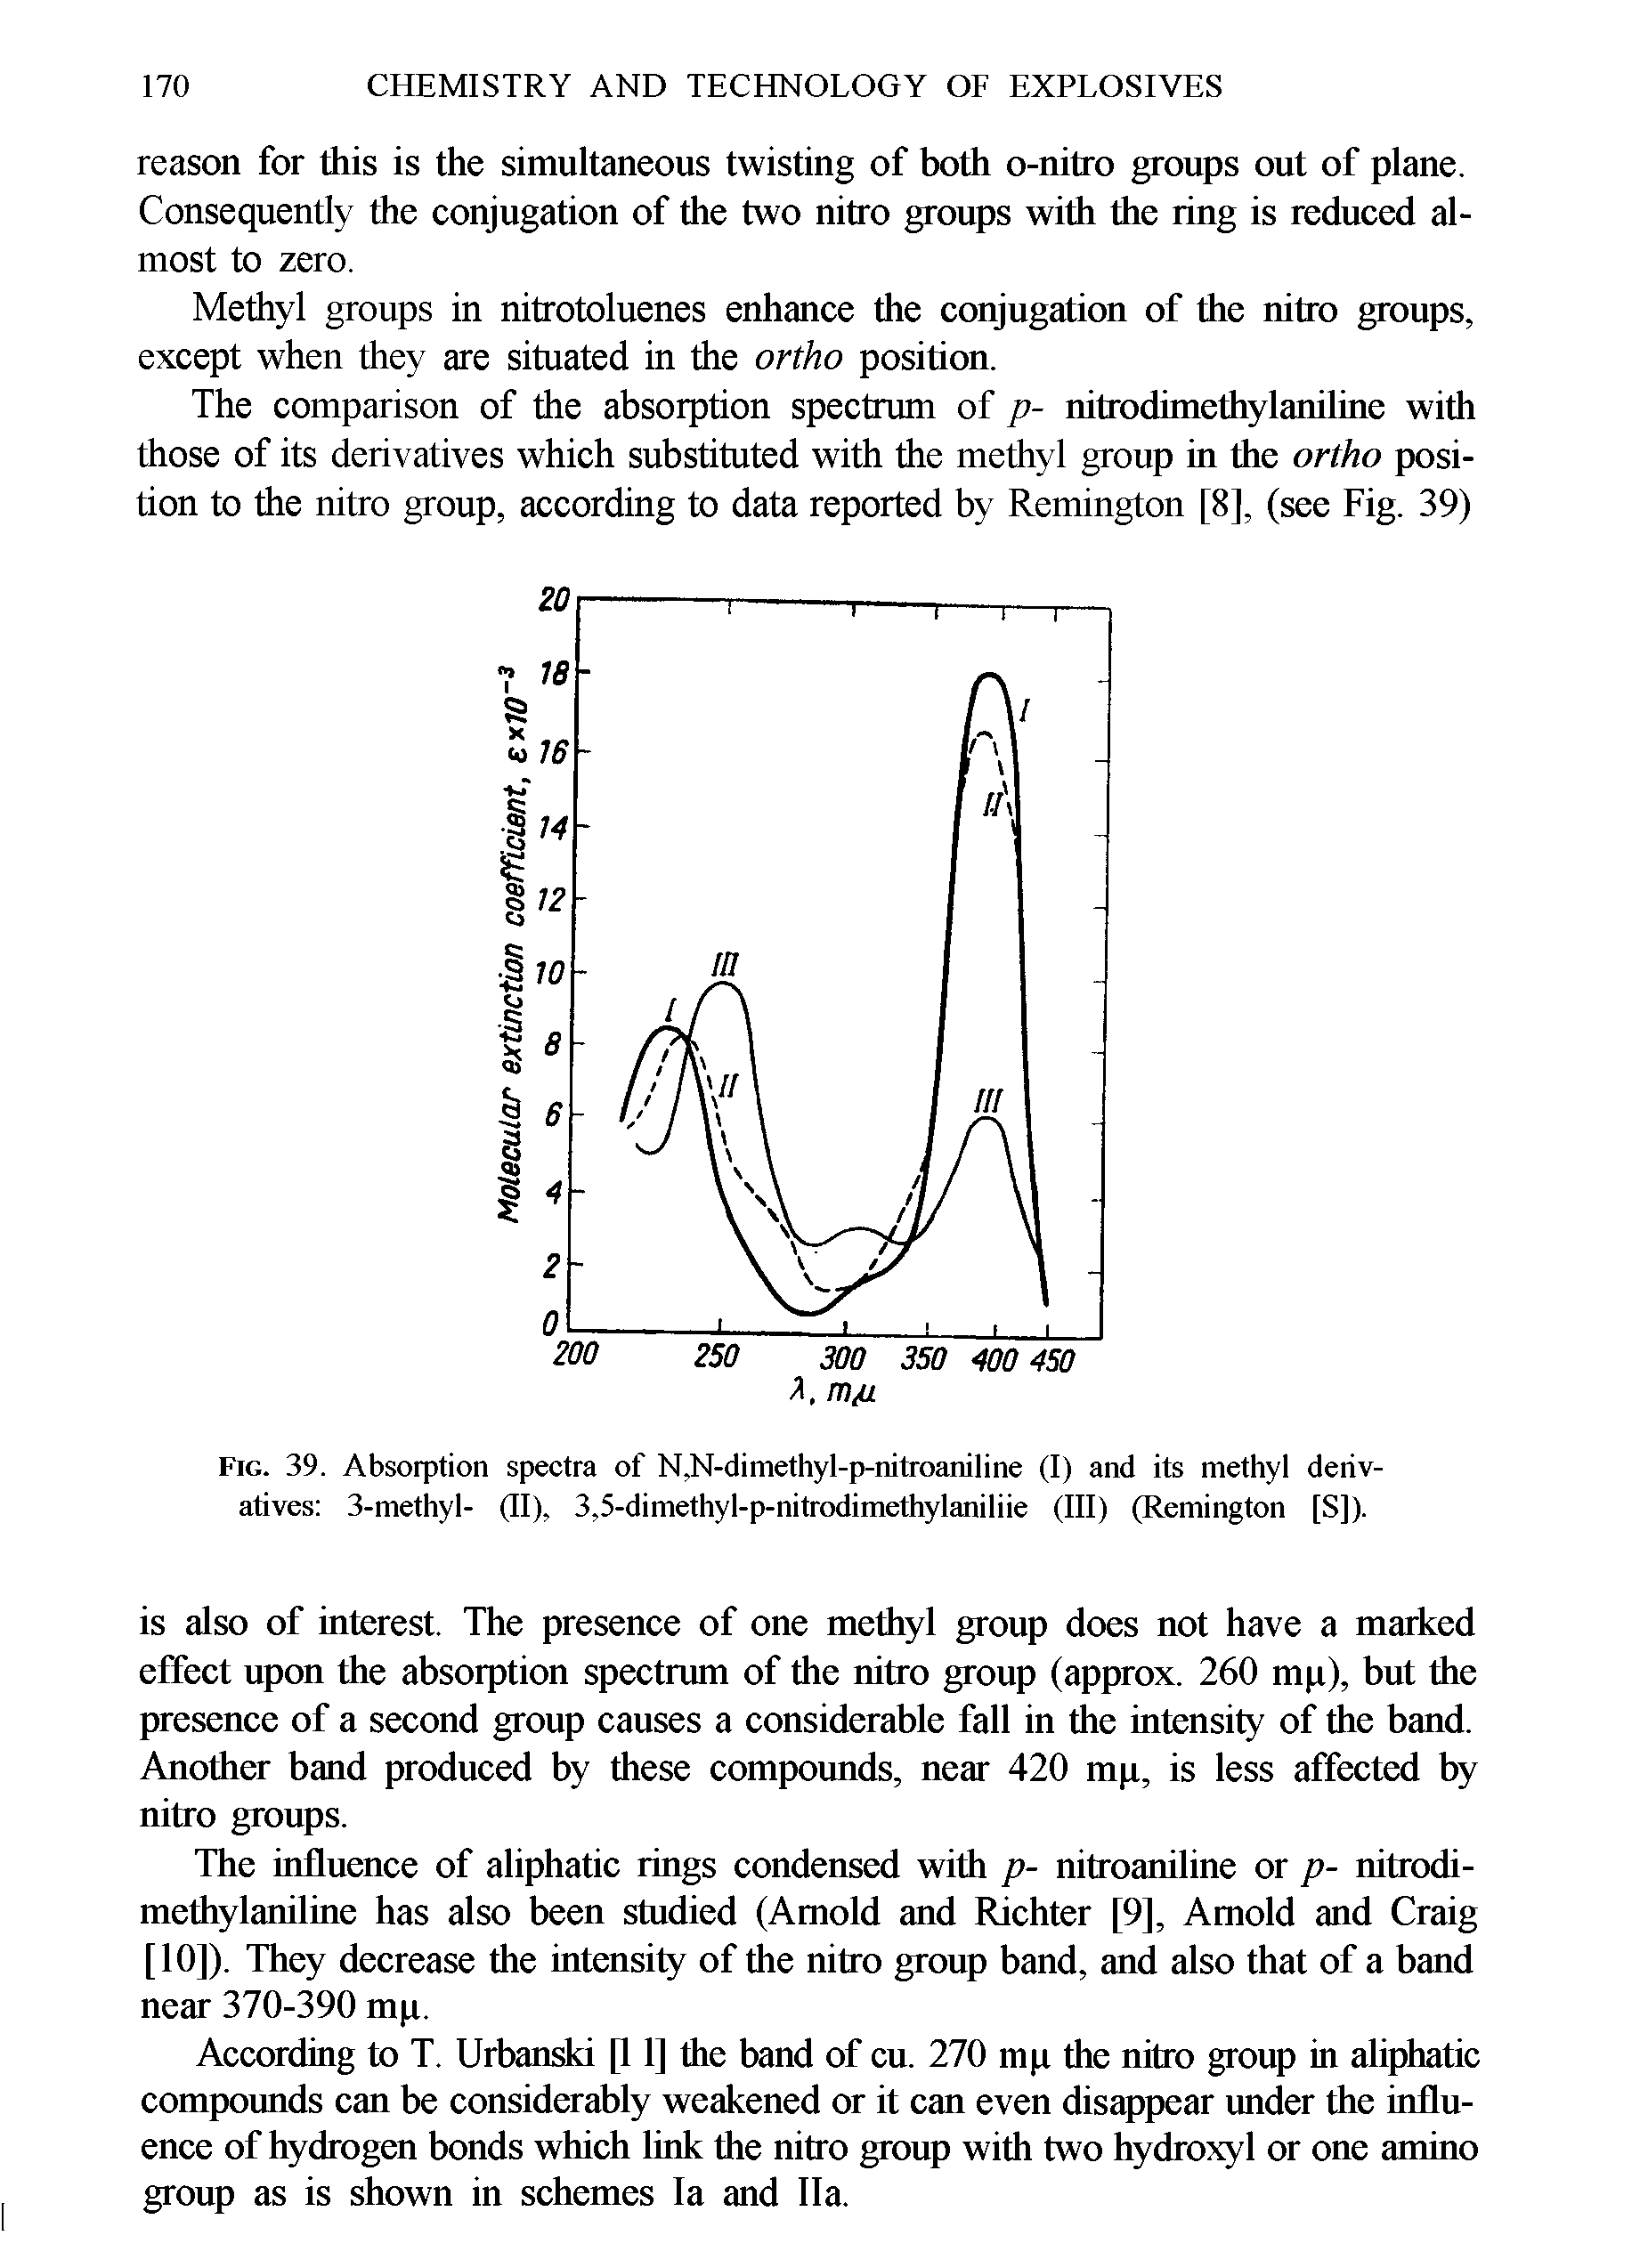 Fig. 39. Absorption spectra of N,N-dimethyl-p-nitroaniline (I) and its methyl derivatives 3-methyl- (II), 3,5-dimethyl-p-nitrodimethylaniliie (III) (Remington [S]).